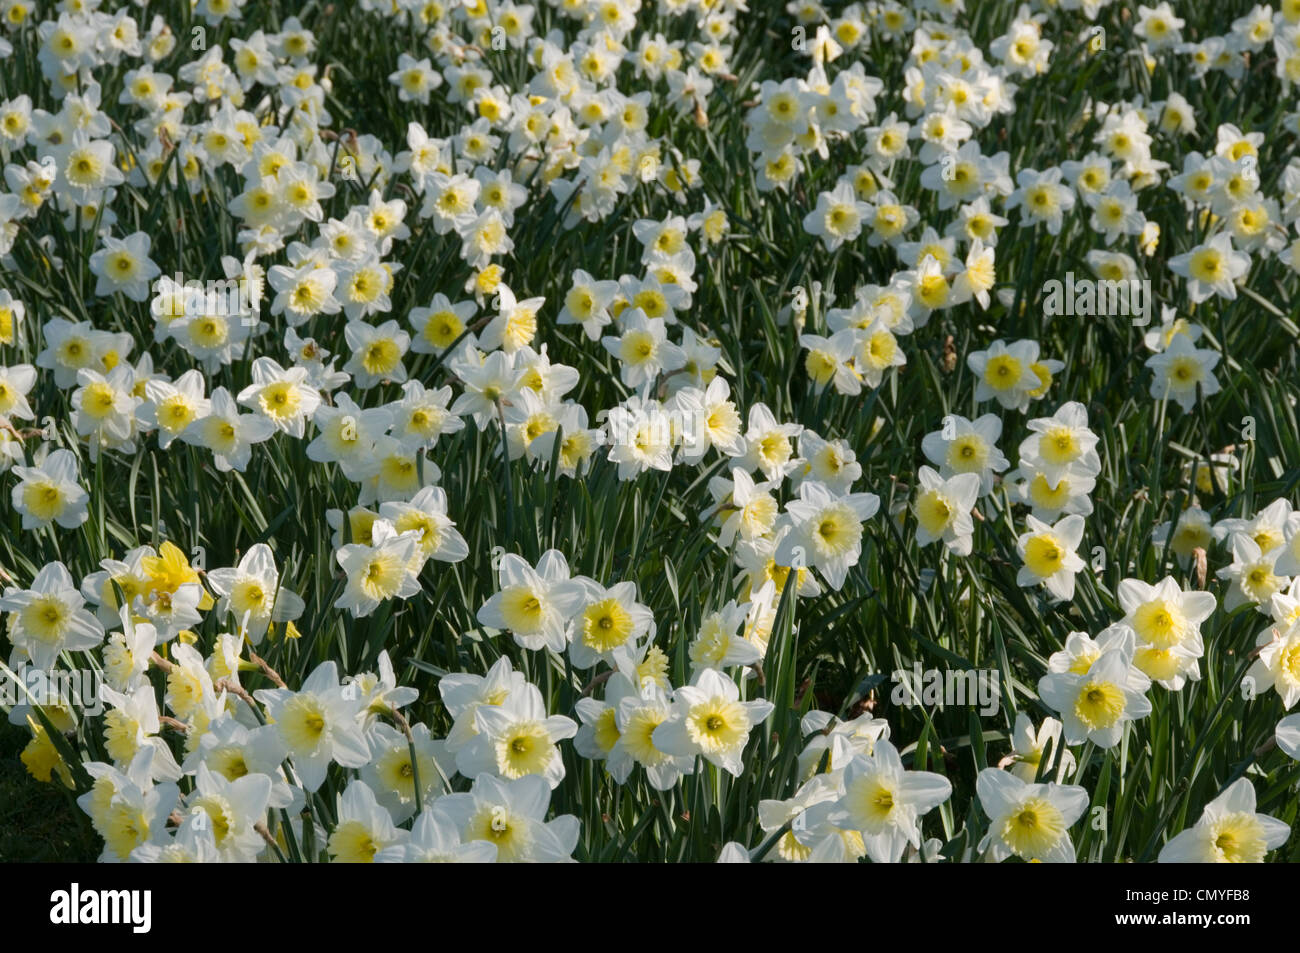 Ammassato narcisi in fiore - bianco con centri di colore giallo Foto Stock